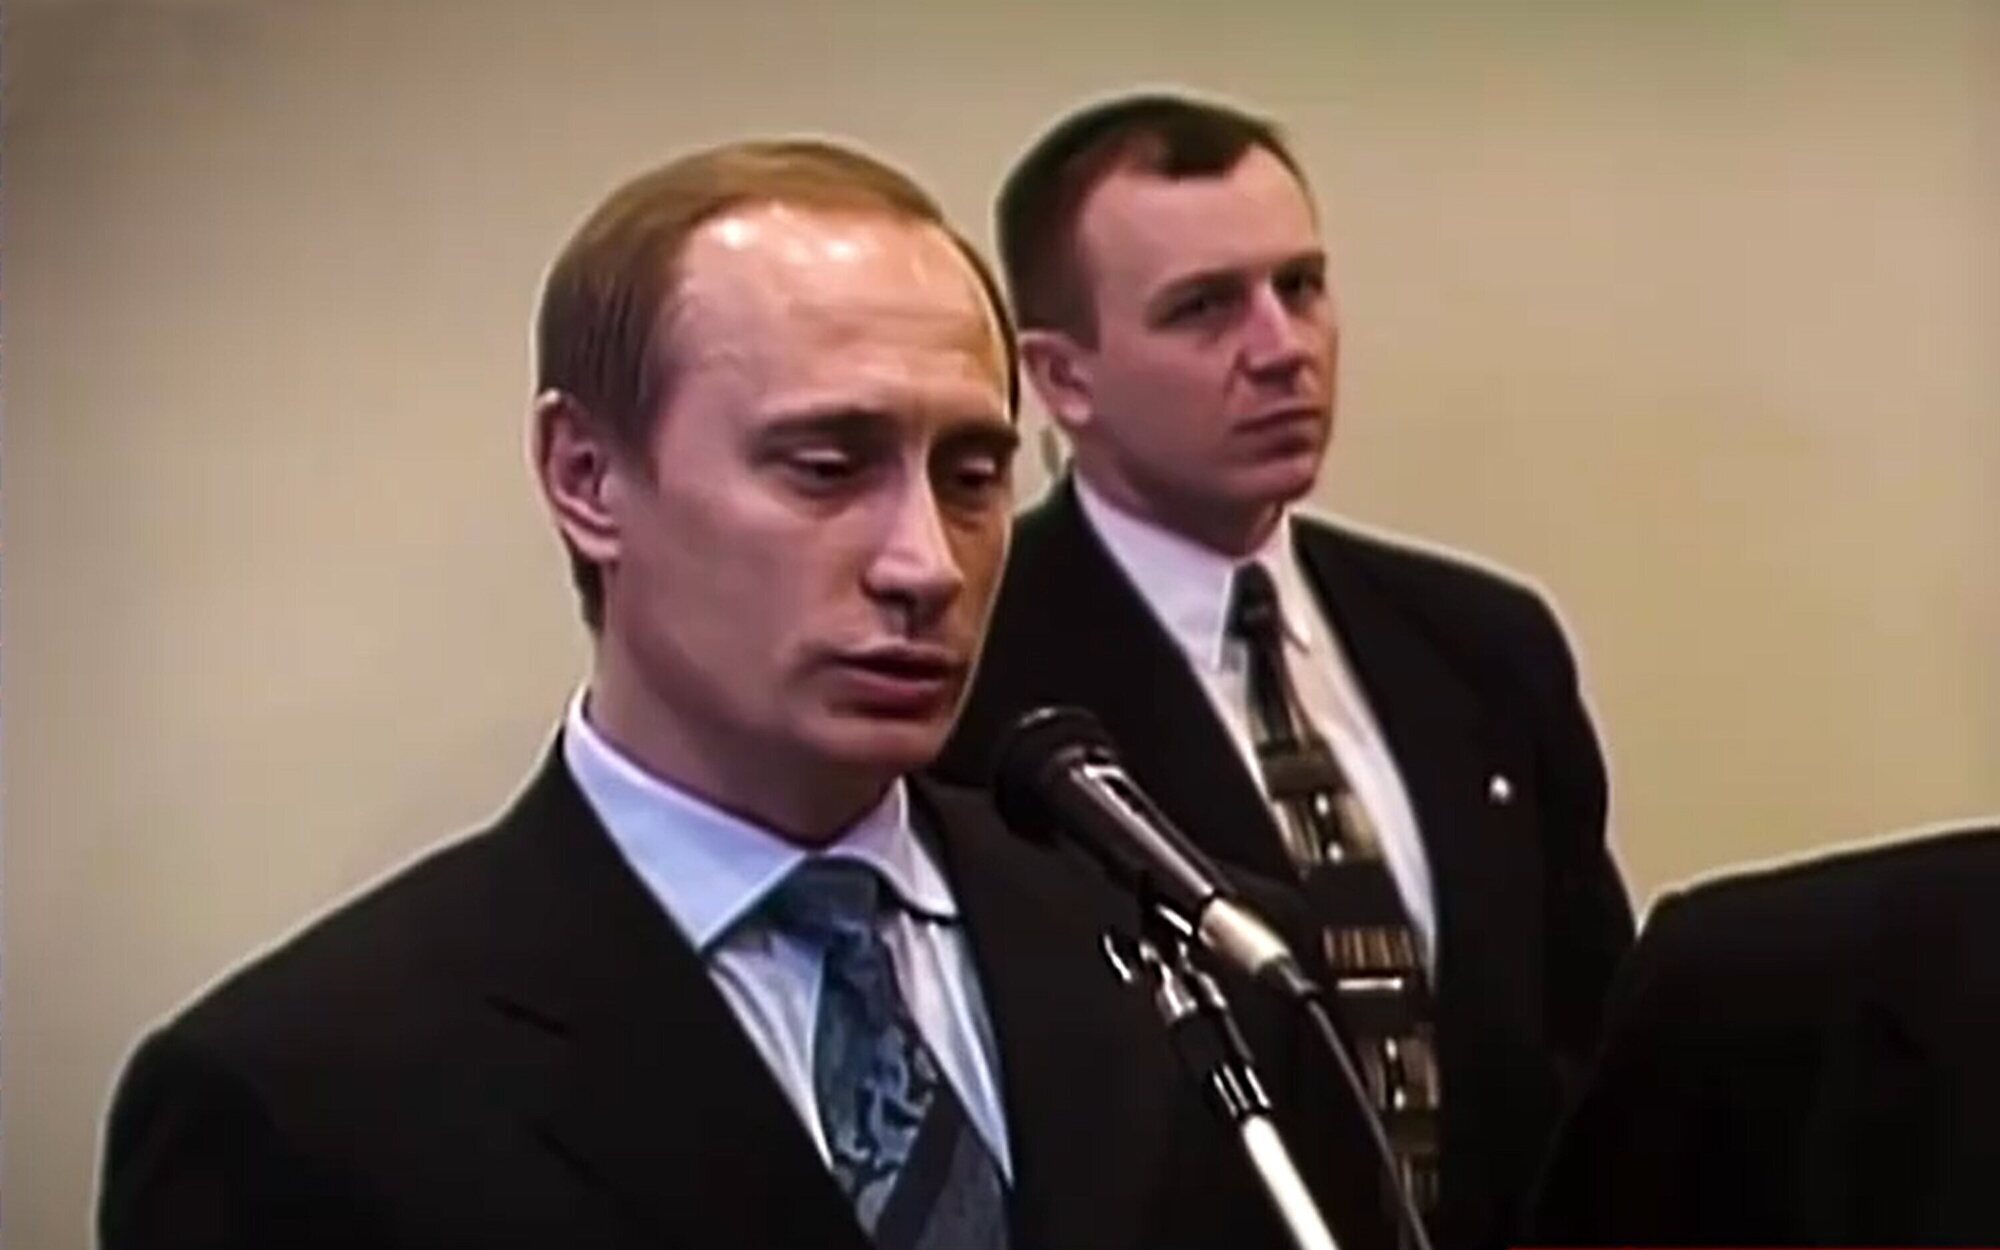 'Todo es verdad' emitirá un especial sobre Vladímir Putin el martes 1 de marzo en Cuatro